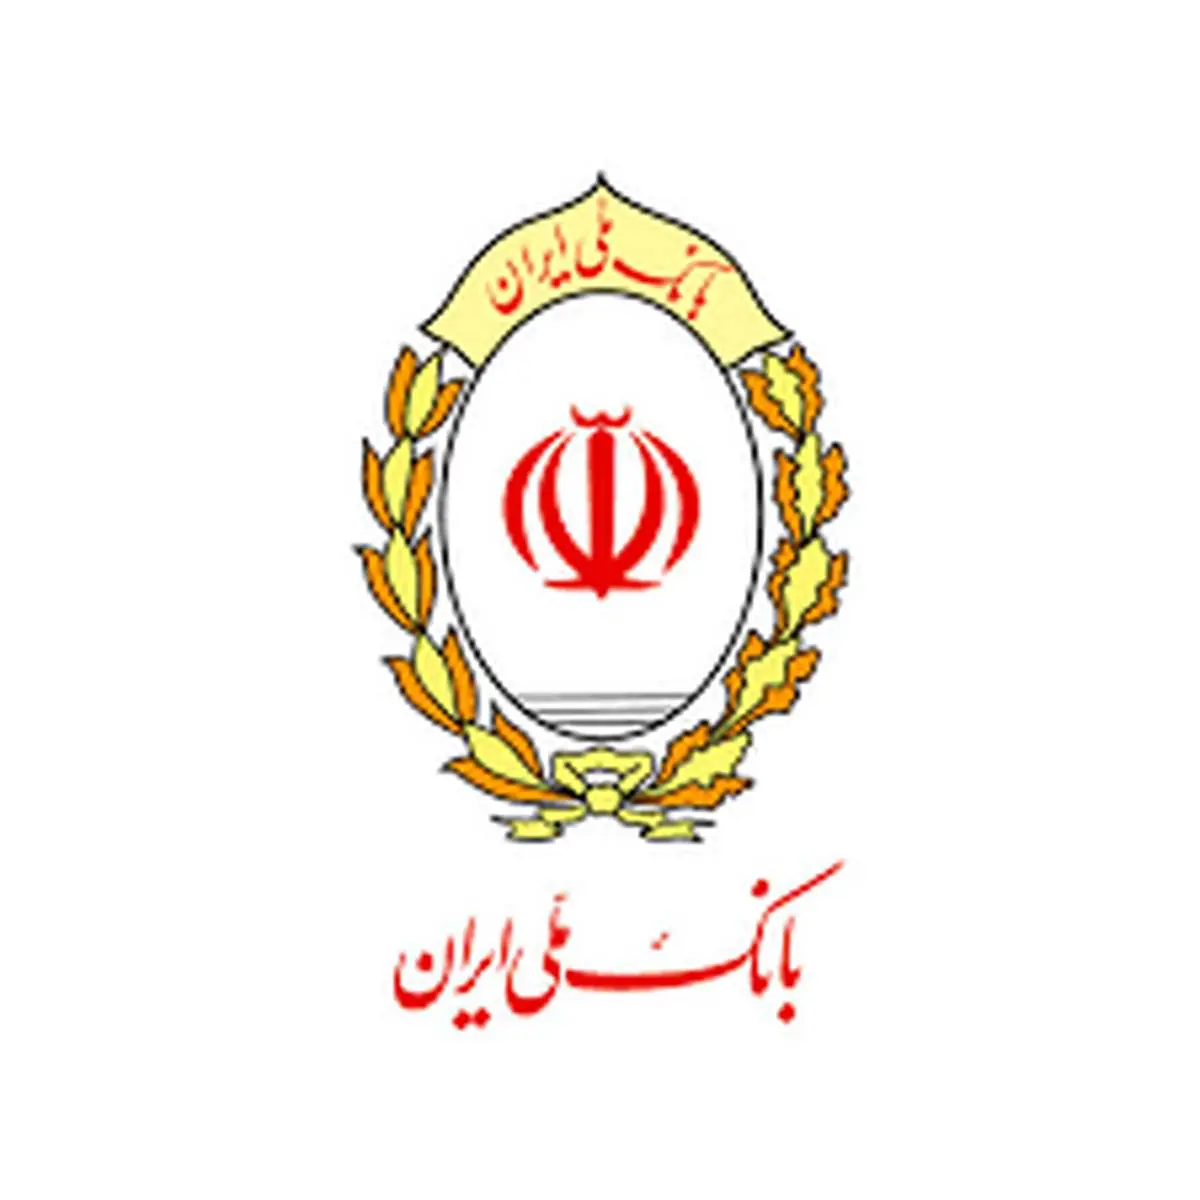 91 سال، پر افتخار/ عمل به مسئولیت اجتماعی، نقطه قوت بانک ملی ایران